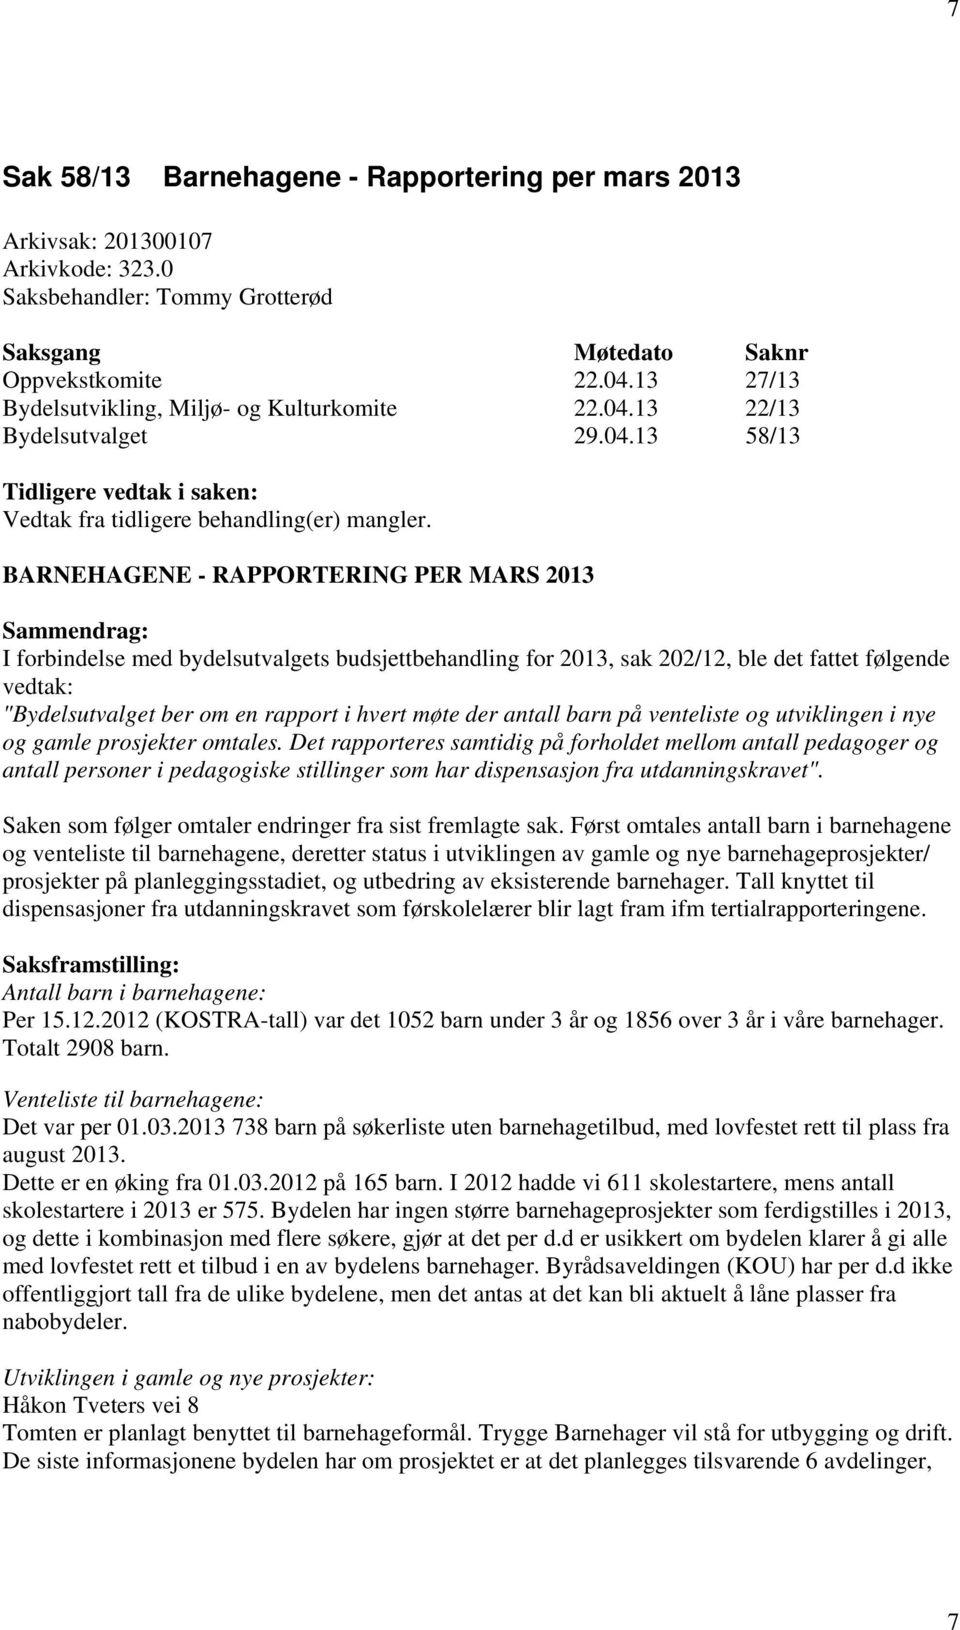 BARNEHAGENE - RAPPORTERING PER MARS 2013 Sammendrag: I forbindelse med bydelsutvalgets budsjettbehandling for 2013, sak 202/12, ble det fattet følgende vedtak: "Bydelsutvalget ber om en rapport i